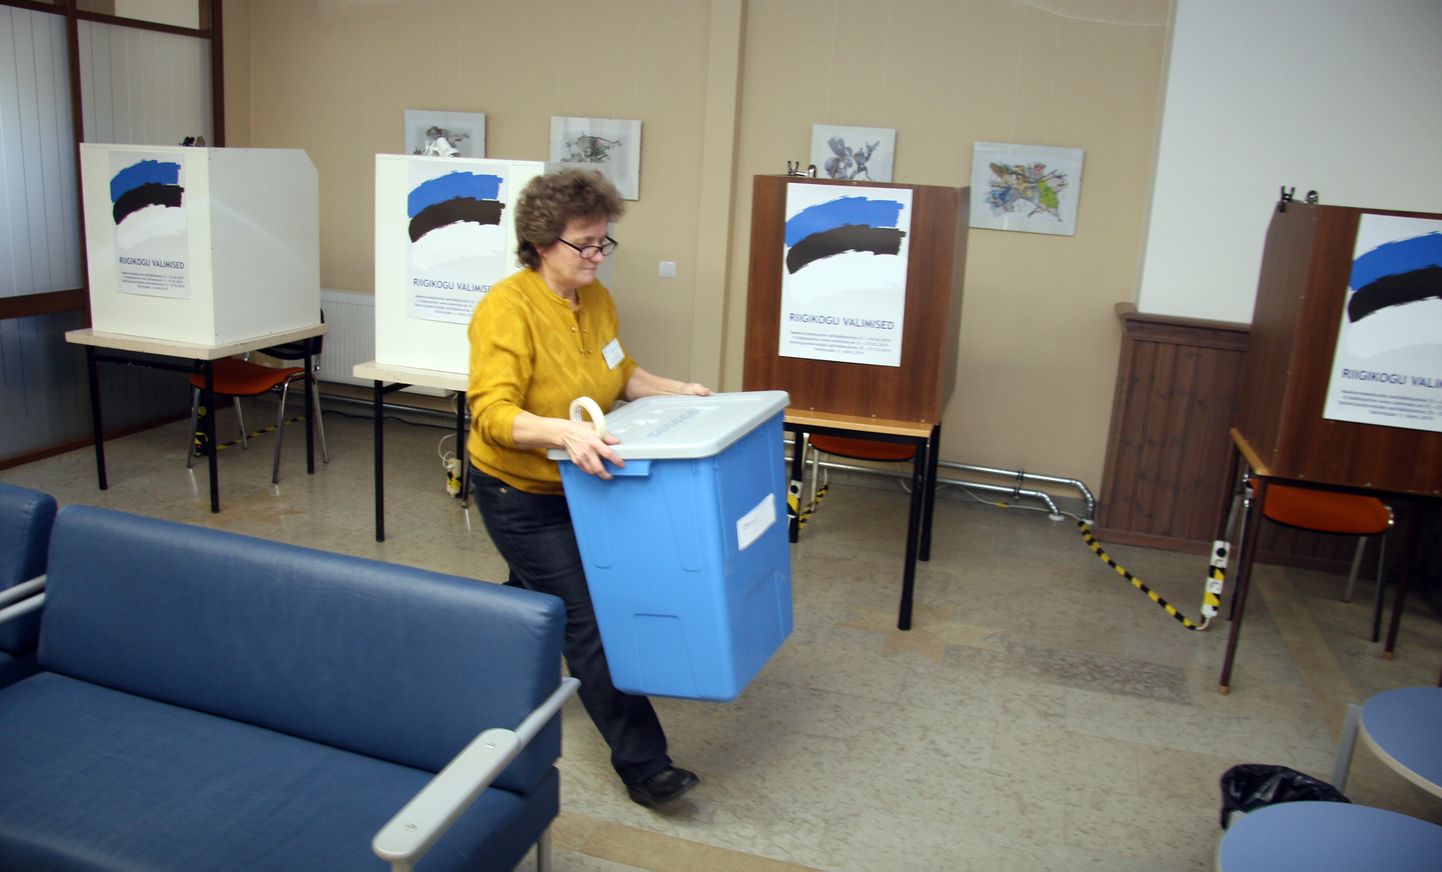 Эха Аусмеэс, председатель избирательного участка, находящегося в Йыхвиском волостном доме, устанавливает избирательный ящик в первый день предварительного голосования. К вечеру воскресенья этот ящик должен быть гораздо тяжелее.